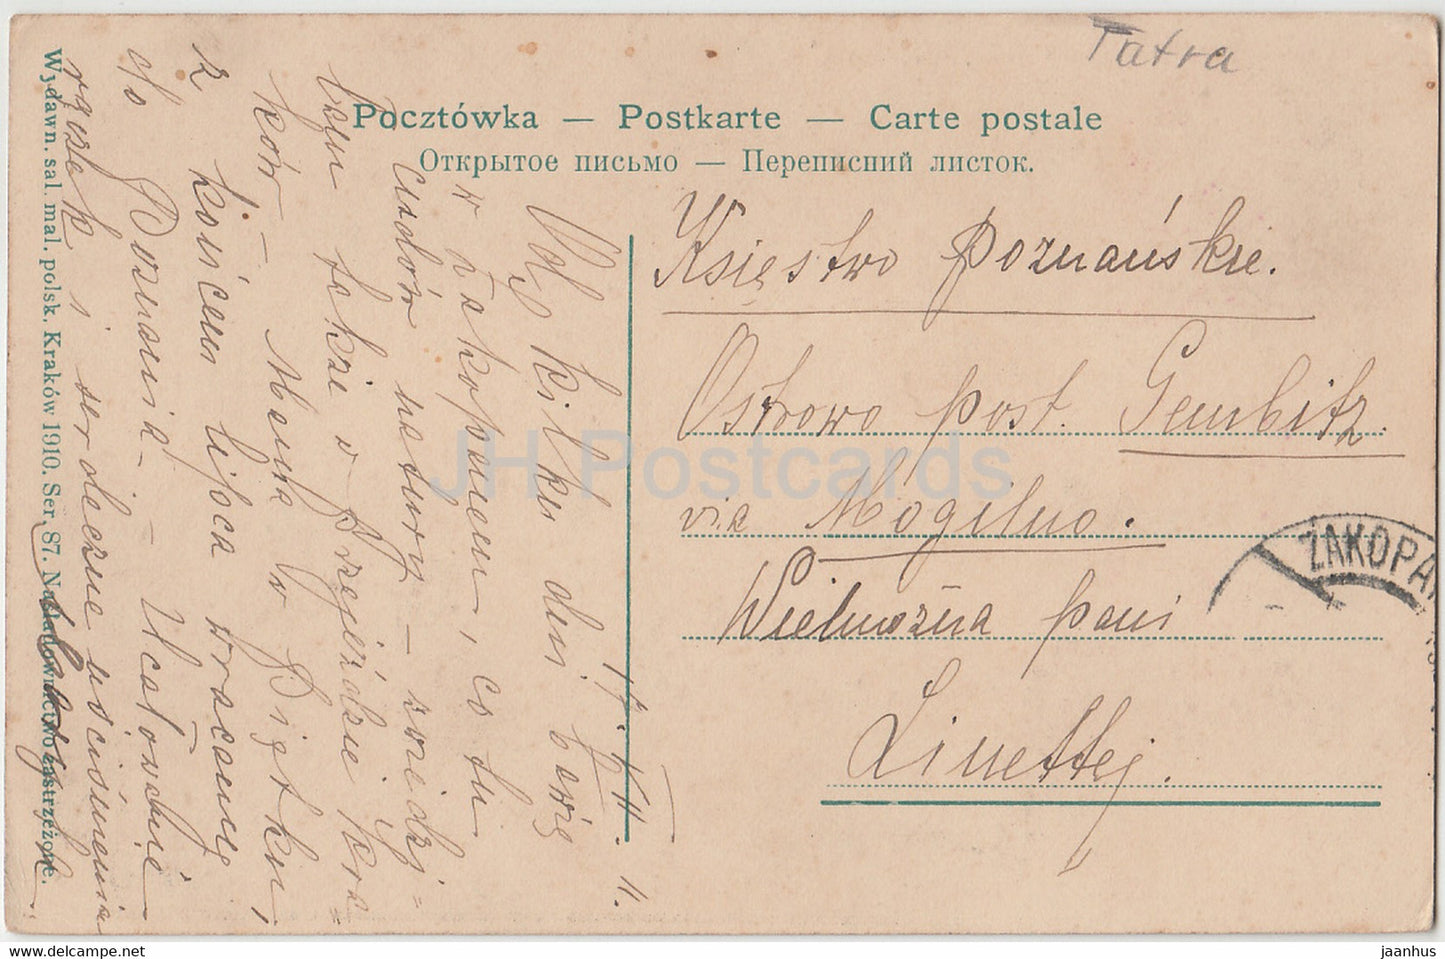 Tatry - Kuznica ze szczytu Nosala - 87 - old postcard - 1910 - Poland - used